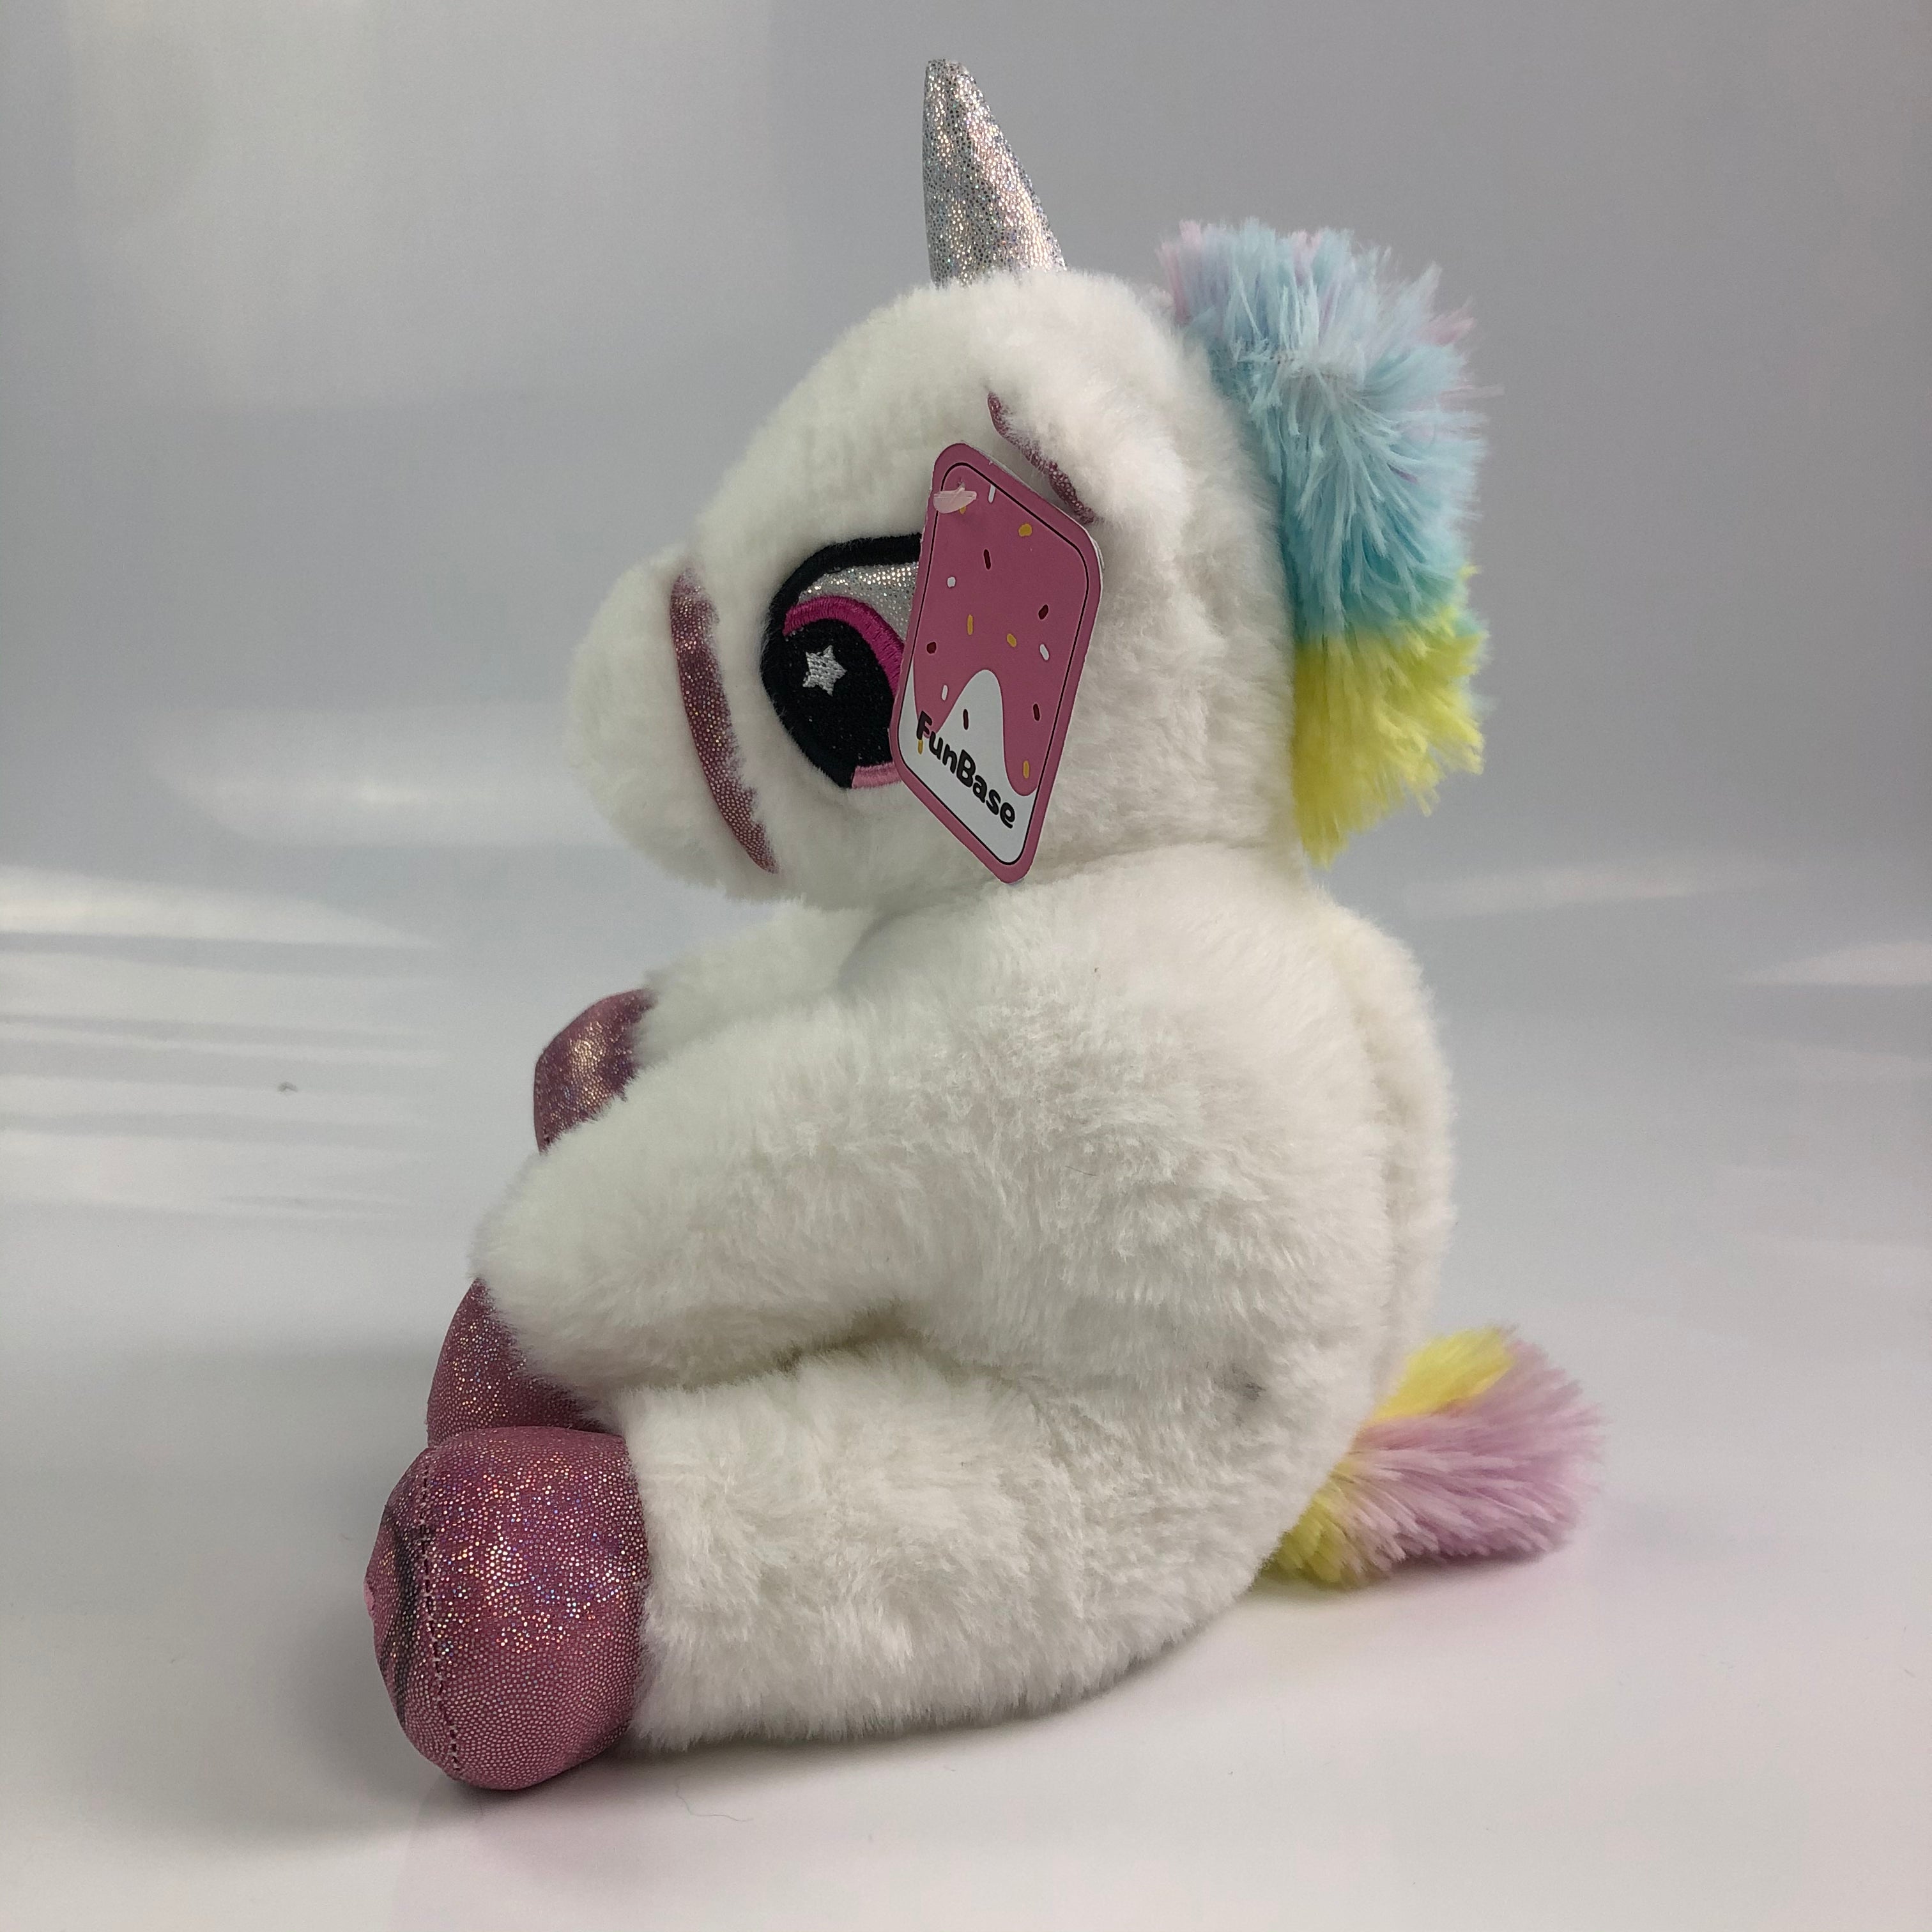 FunBase Unicorn Toys Stuffed Animal Gifts - Glow Guards